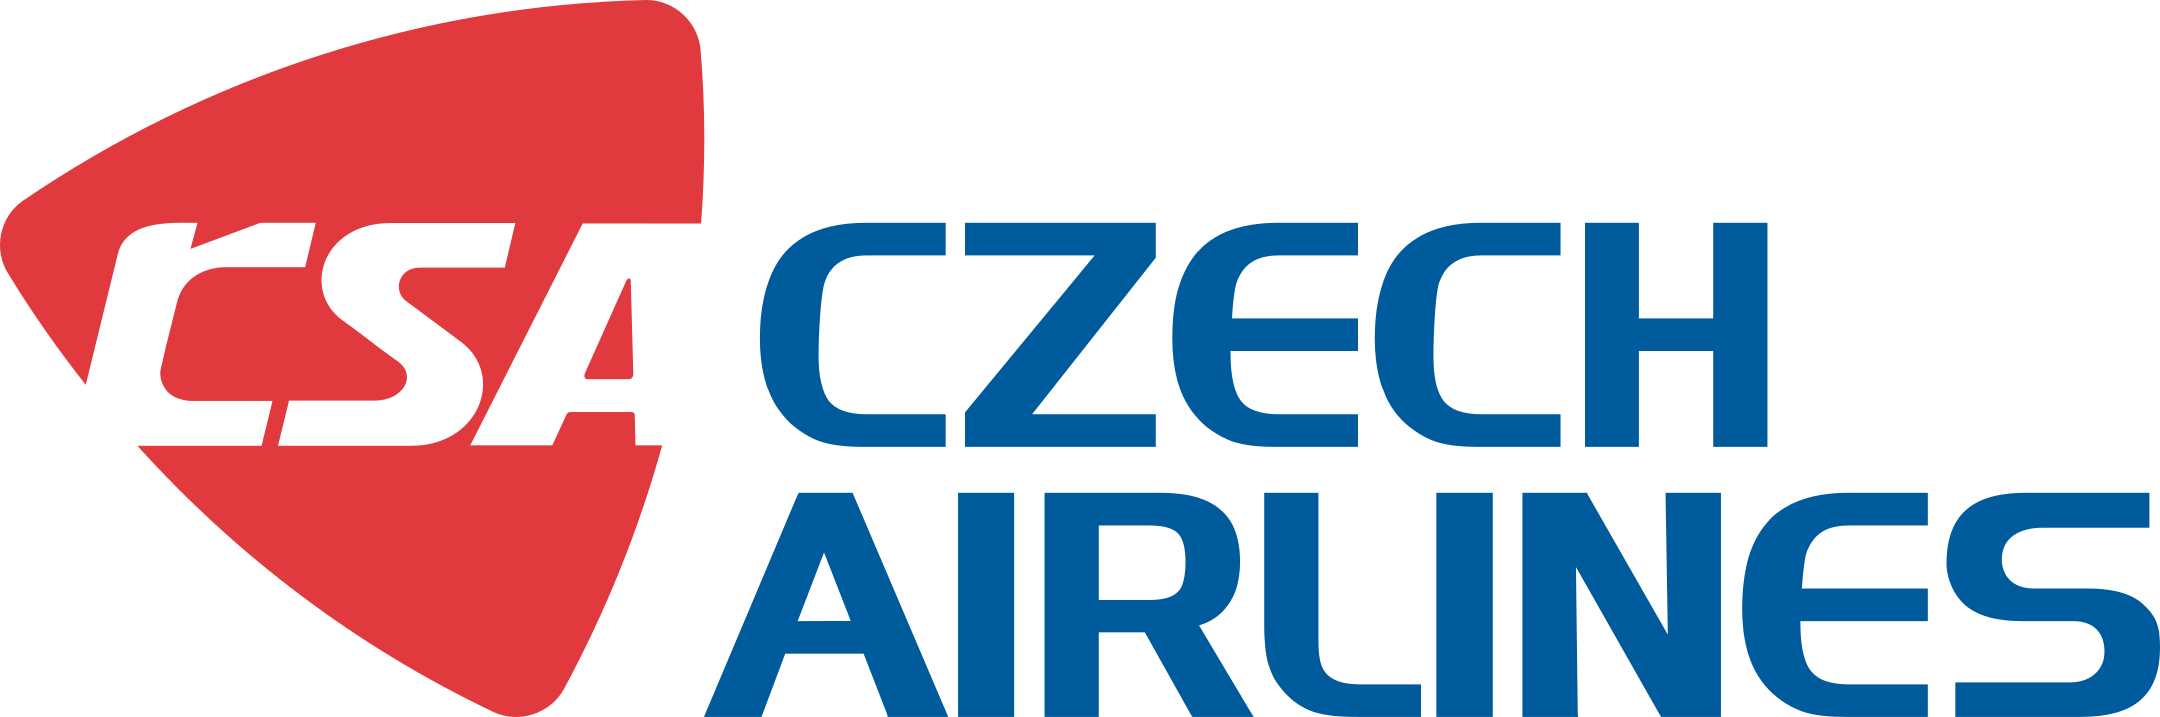 Czech Airlines Logo.